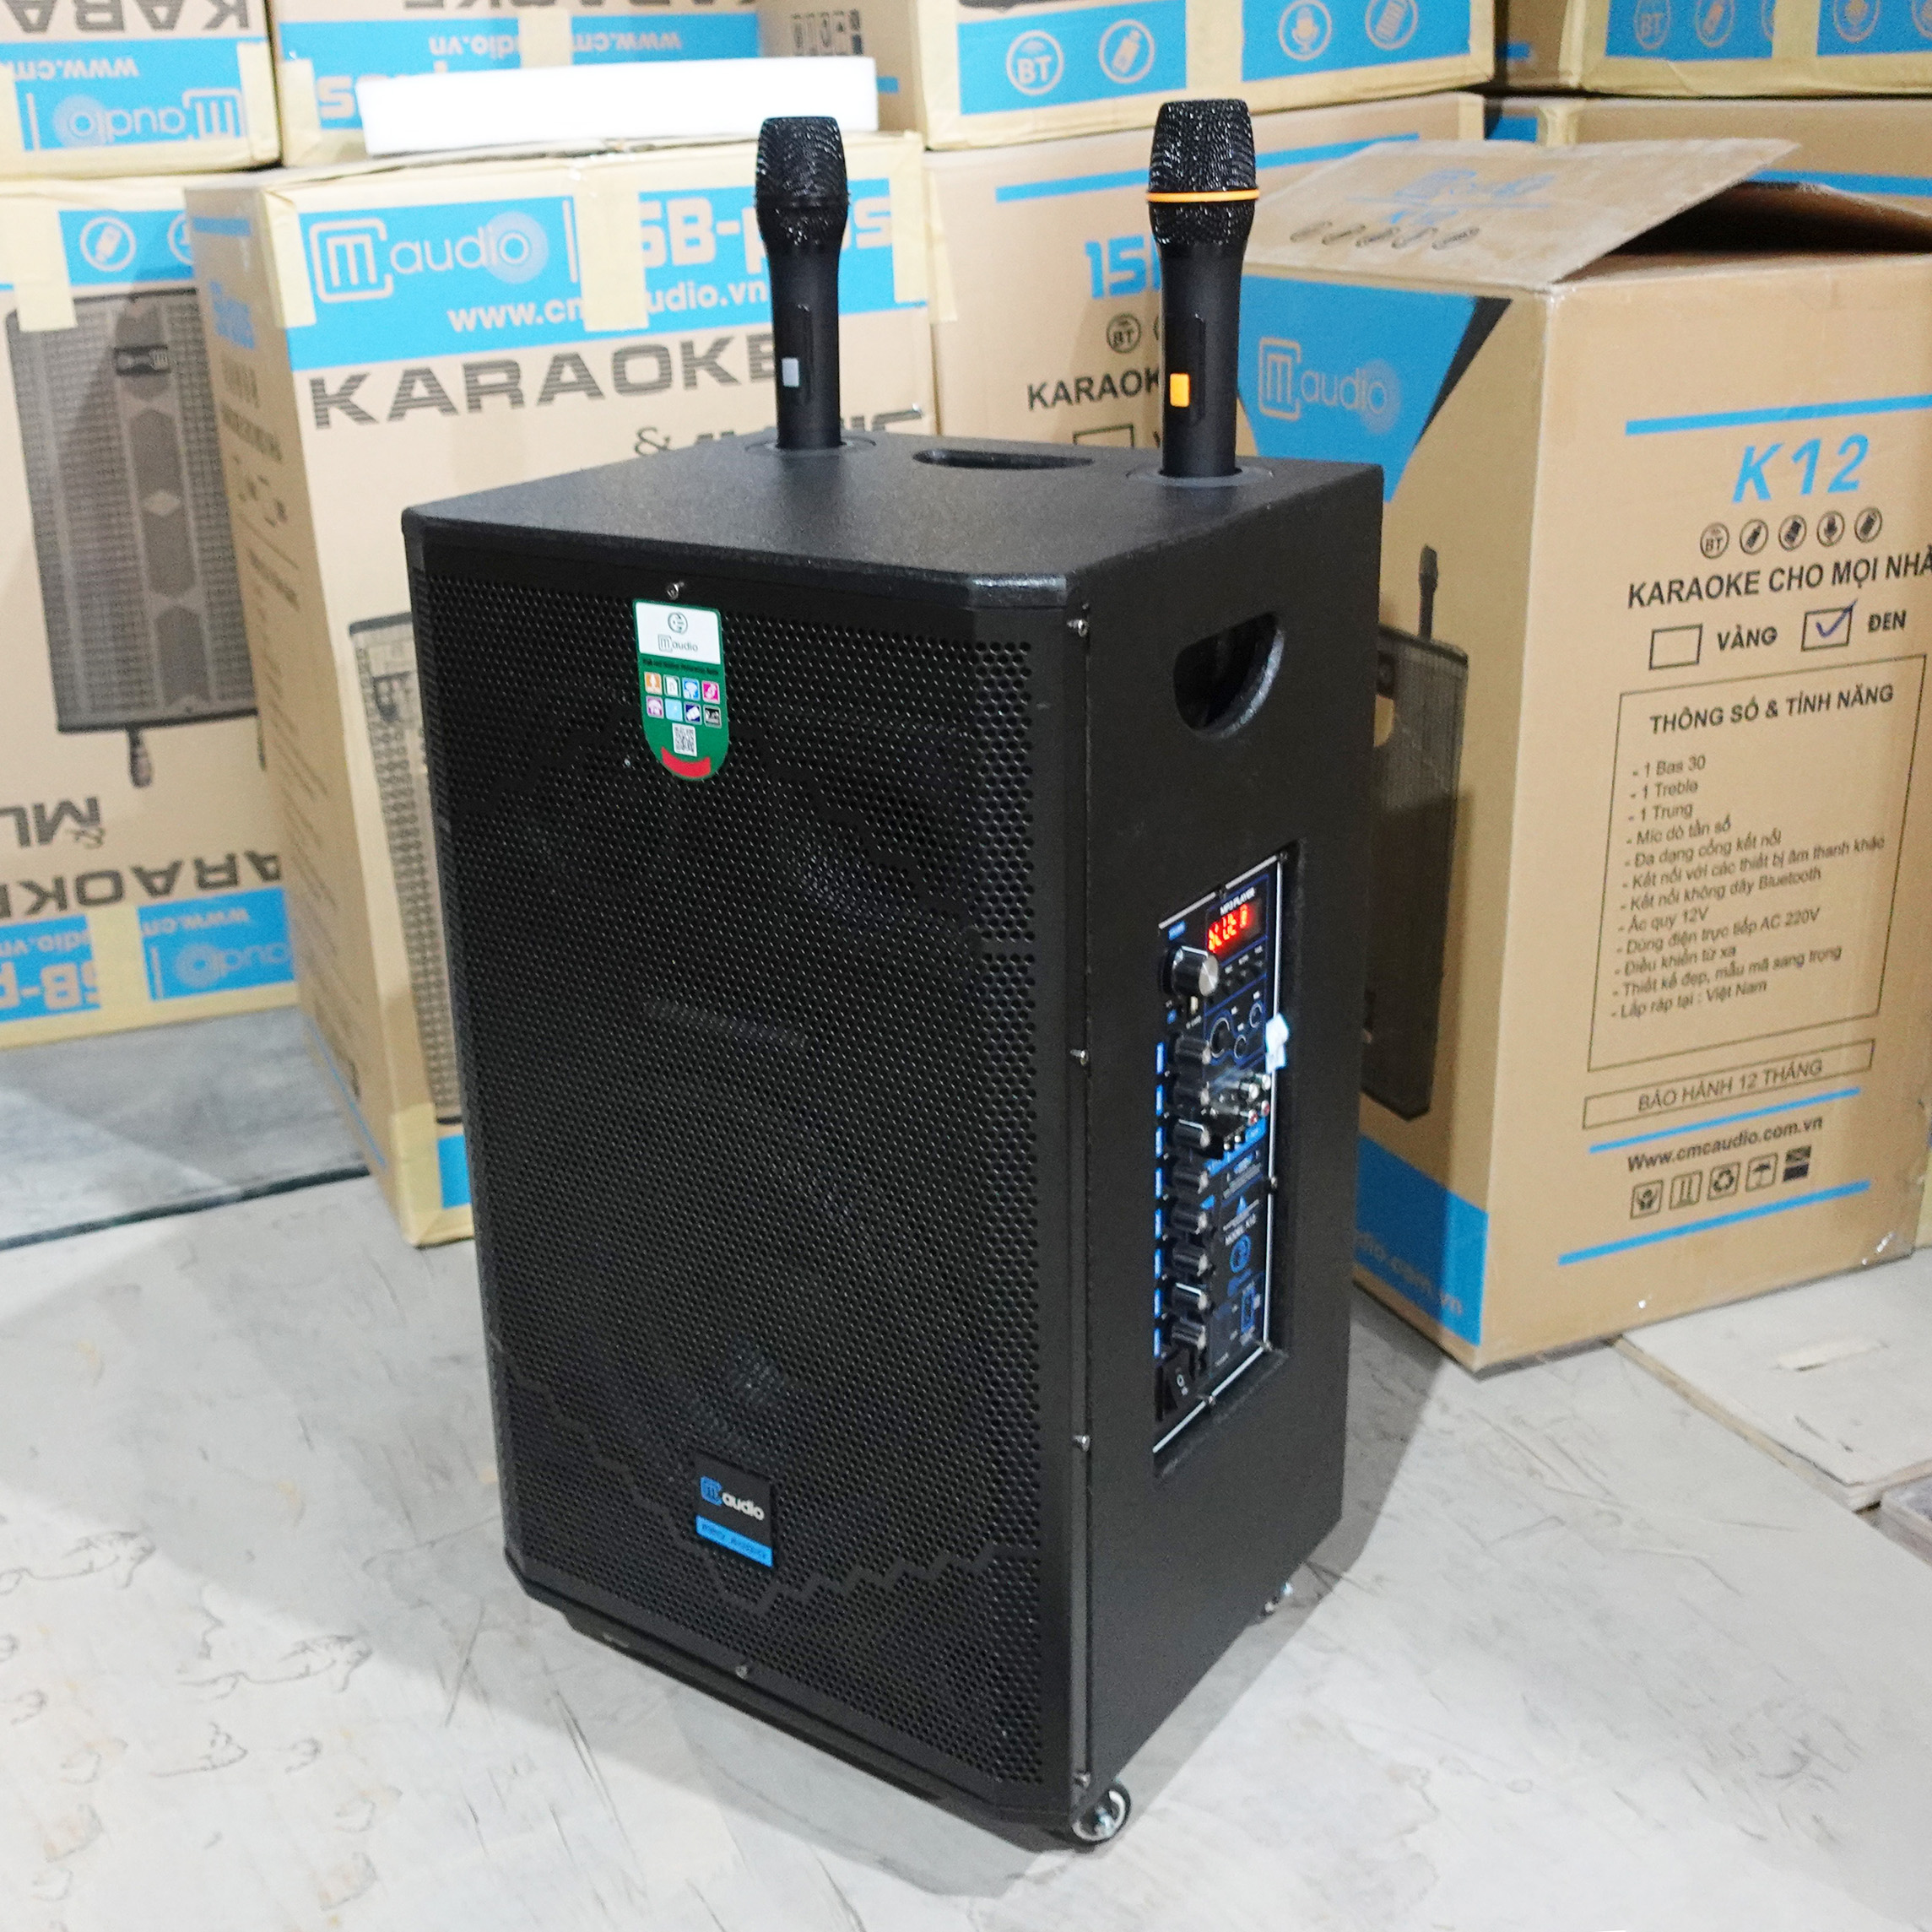 Loa kéo hát karaoke CMaudio K12 bass 30, 3 đường tiếng kèm 2 tay micro không dây sóng UHF, bảo hành 12 tháng